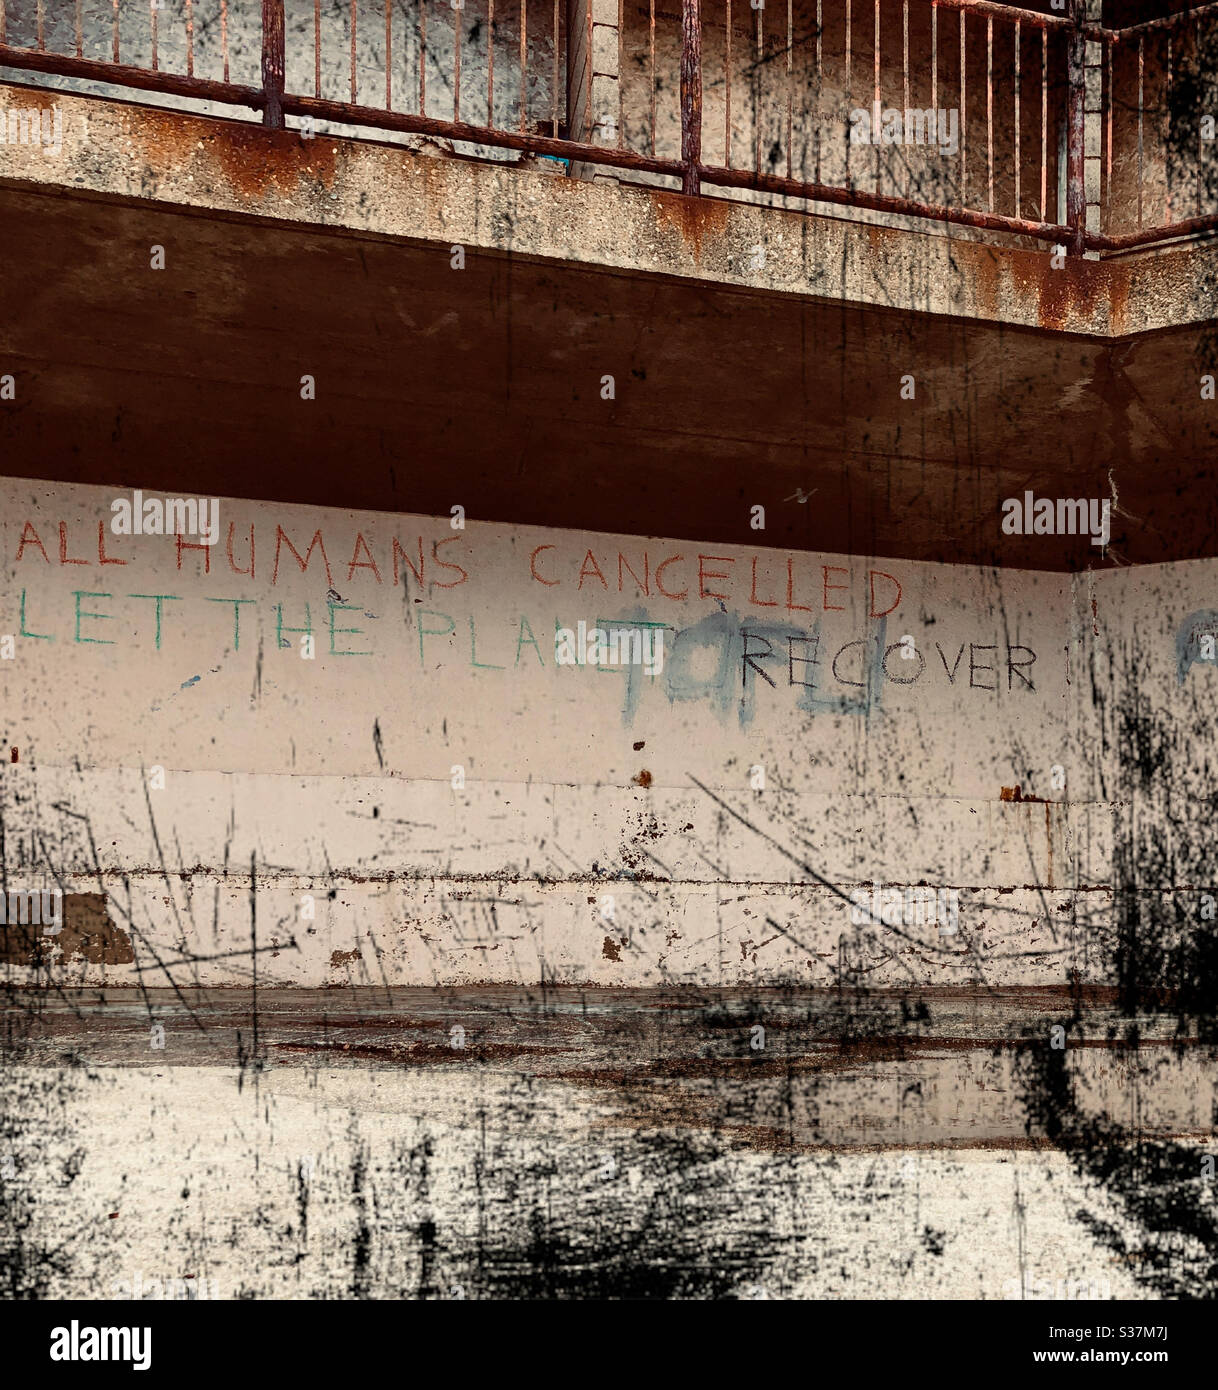 Graffiti in einem heruntergekommenen Bereich Alle Menschen abgesagt Let the Planet Recover Stockfoto